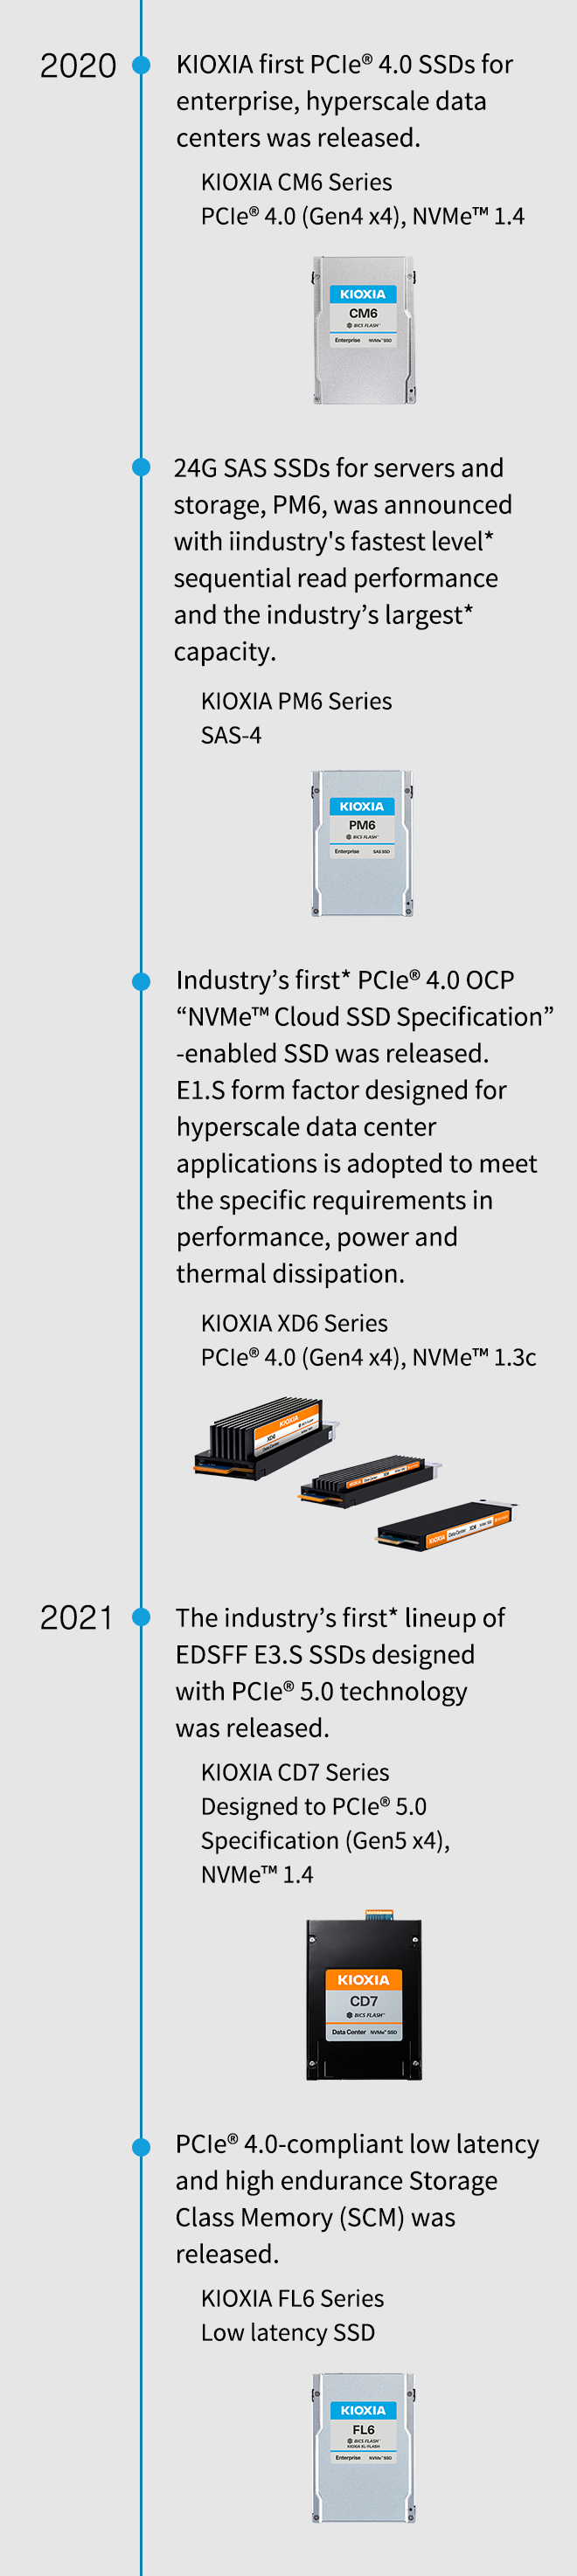 2020년. 엔터프라이즈용 KIOXIA 최초의 PCIe® 4.0 SSD인 하이퍼스케일 데이터 센터가 출시되었습니다. KIOXIA CM6 시리즈 PCIe® 4.0(Gen4 x4), NVMe™ 1.4. 서버 및 스토리지용 24G SAS SSD인 PM6은 업계에서 가장 빠른* 순차 읽기 성능과 업계 최대* 용량으로 발표되었습니다. KIOXIA PM6 시리즈 SAS-4. 업계 최초*의 PCIe® 4.0 OCP “NVMe™ 클라우드 사양” 을 지원하는 SSD가 출시되었습니다. 하이퍼스케일 데이터 센터 애플리케이션용으로 설계된 E1.S 폼 팩터는 성능, 전력 및 열 손실의 특정 요구 사항을 충족하기 위해 채택되었습니다. KIOXIA XD6 시리즈 PCIe® 4.0(Gen4 x4), NVMe™ 1.3c. 2021년. PCIe® 5.0 기술로 설계된 업계 최초의* EDSFF E3.S SSD 라인업이 출시되었습니다. PCIe® 5.0 사양(Gen5 x4)으로 설계된 KIOXIA CD7 시리즈, NVMe™ 1.4. PCIe® 4.0 호환 저지연 및 높은 내구성의 스토리지 클래스 메모리(SCM)가 출시되었습니다. KIOXIA FL6 시리즈 저지연 SSD